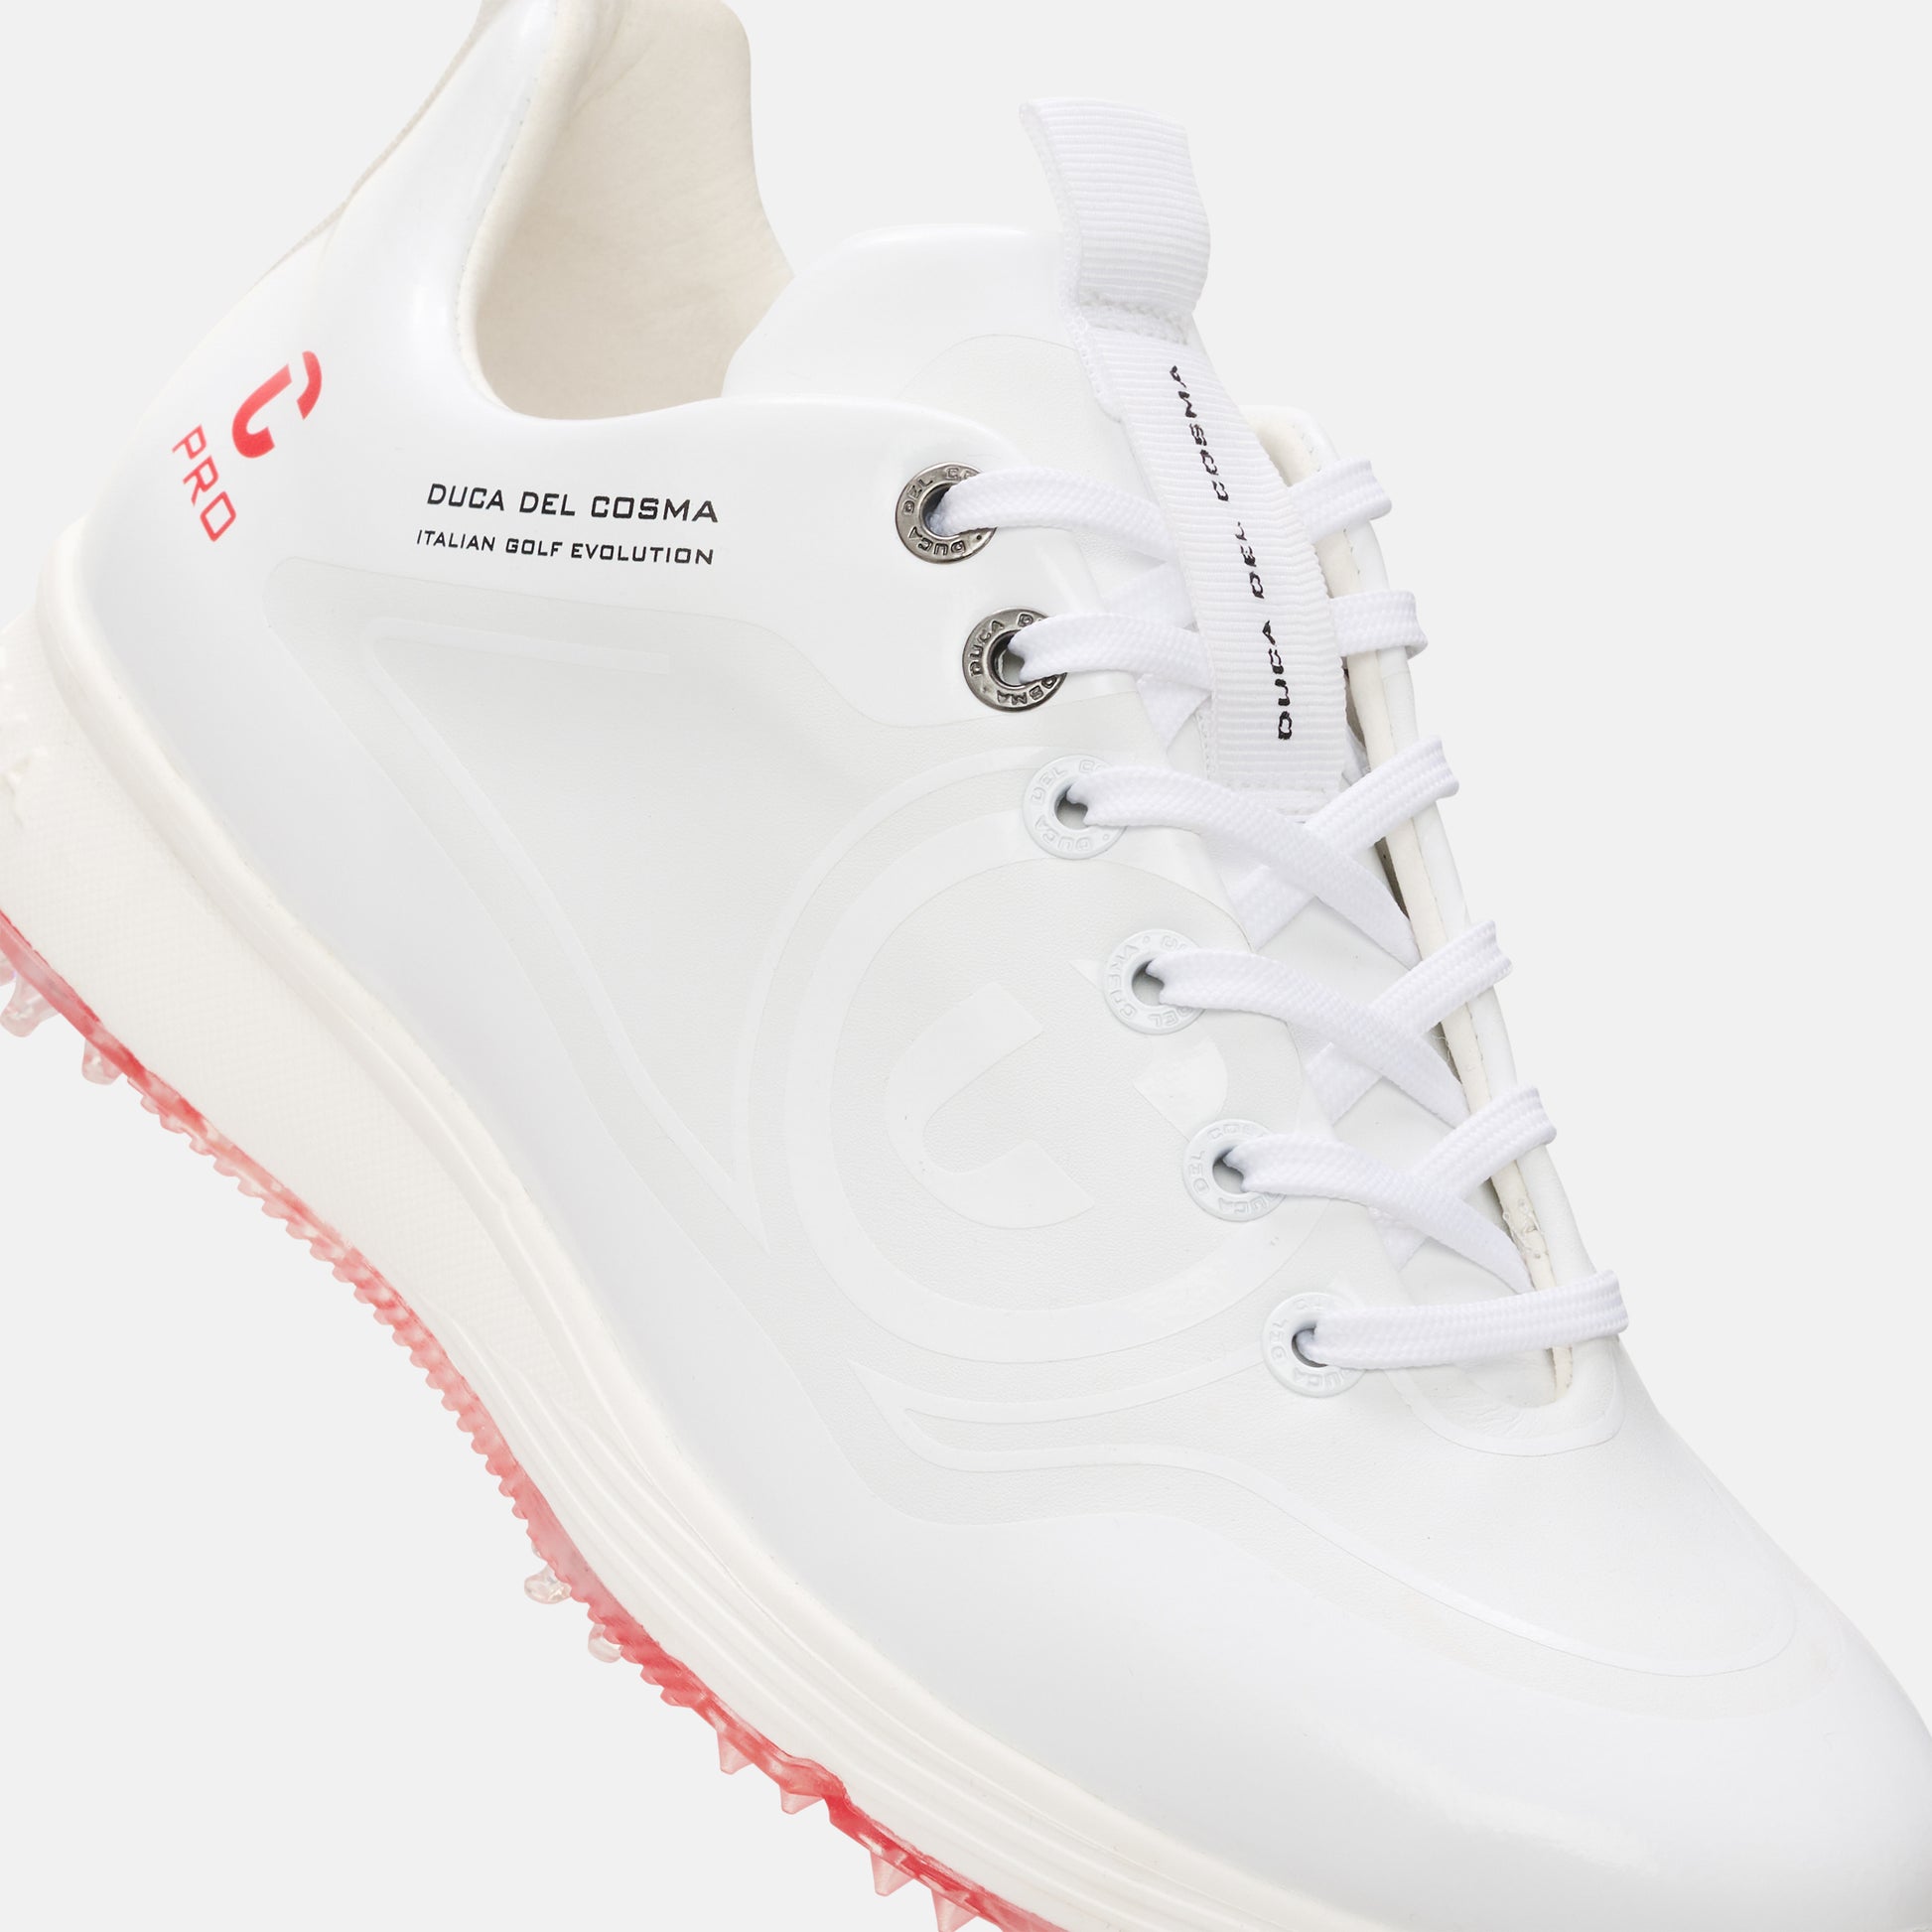 Avanti - Pro Spike women's golf shoe waterproof maximum grip